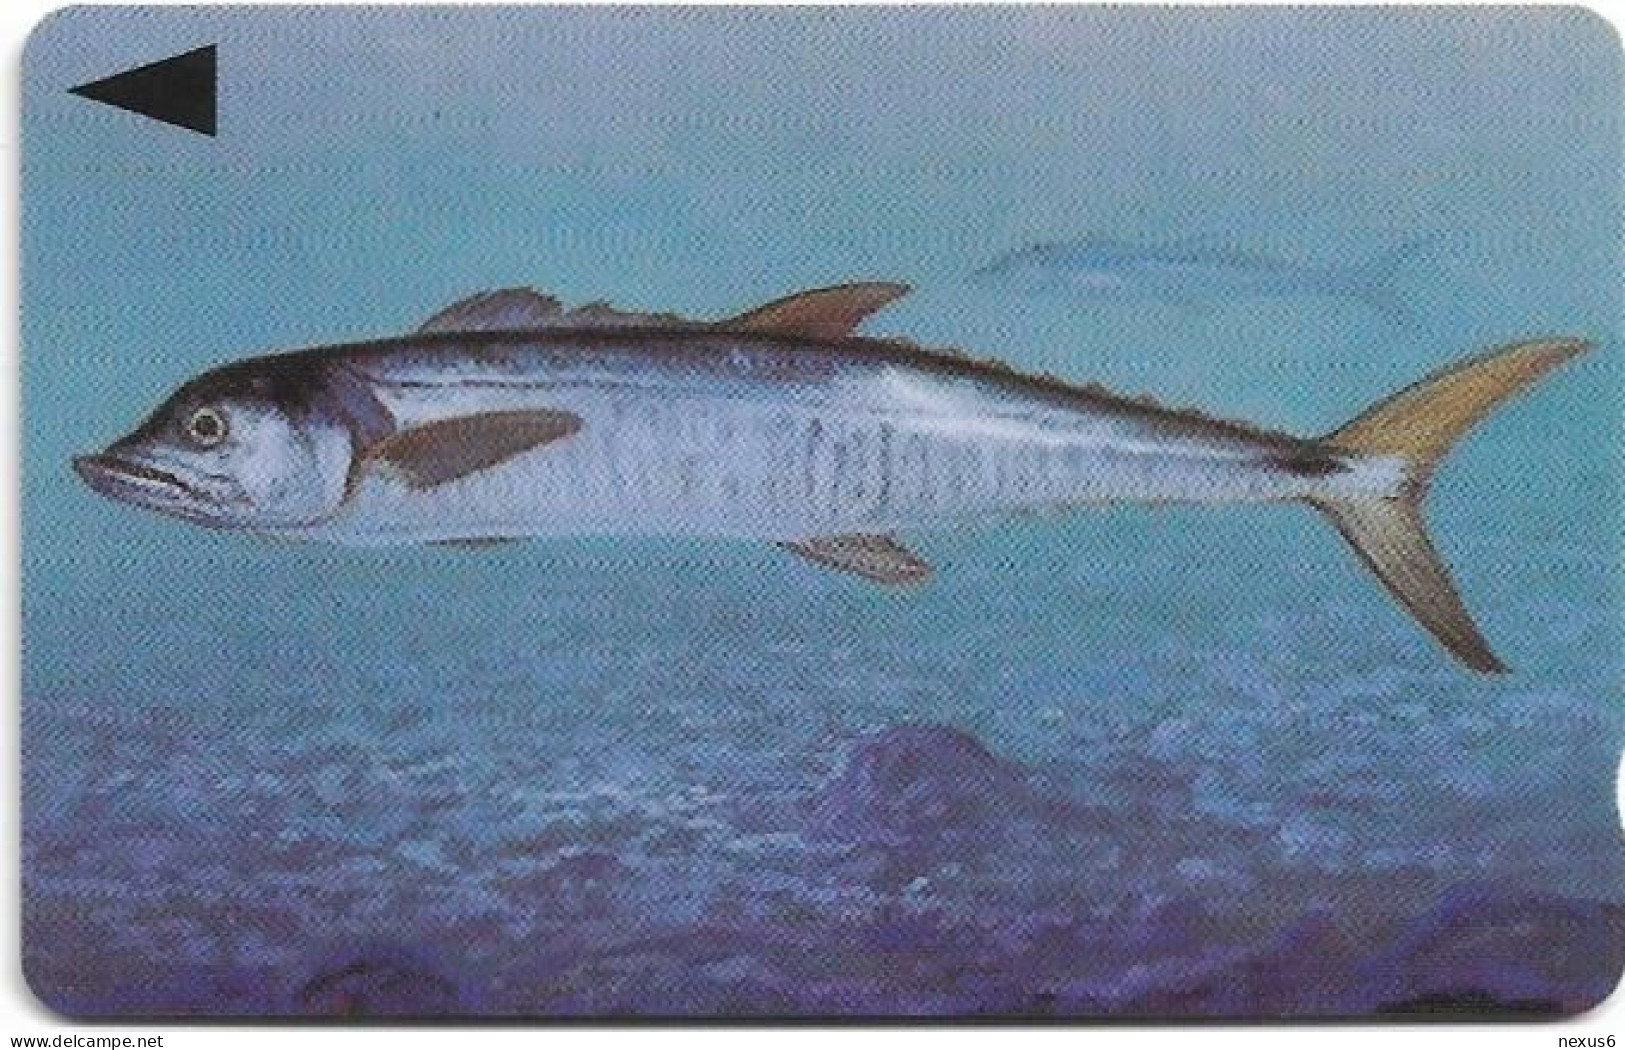 Bahrain - Batelco (GPT) - Fish Of Bahrain - Spanish Mackerel - 39BAHR (Dashed Ø), 1996, 50Units, Used - Baharain